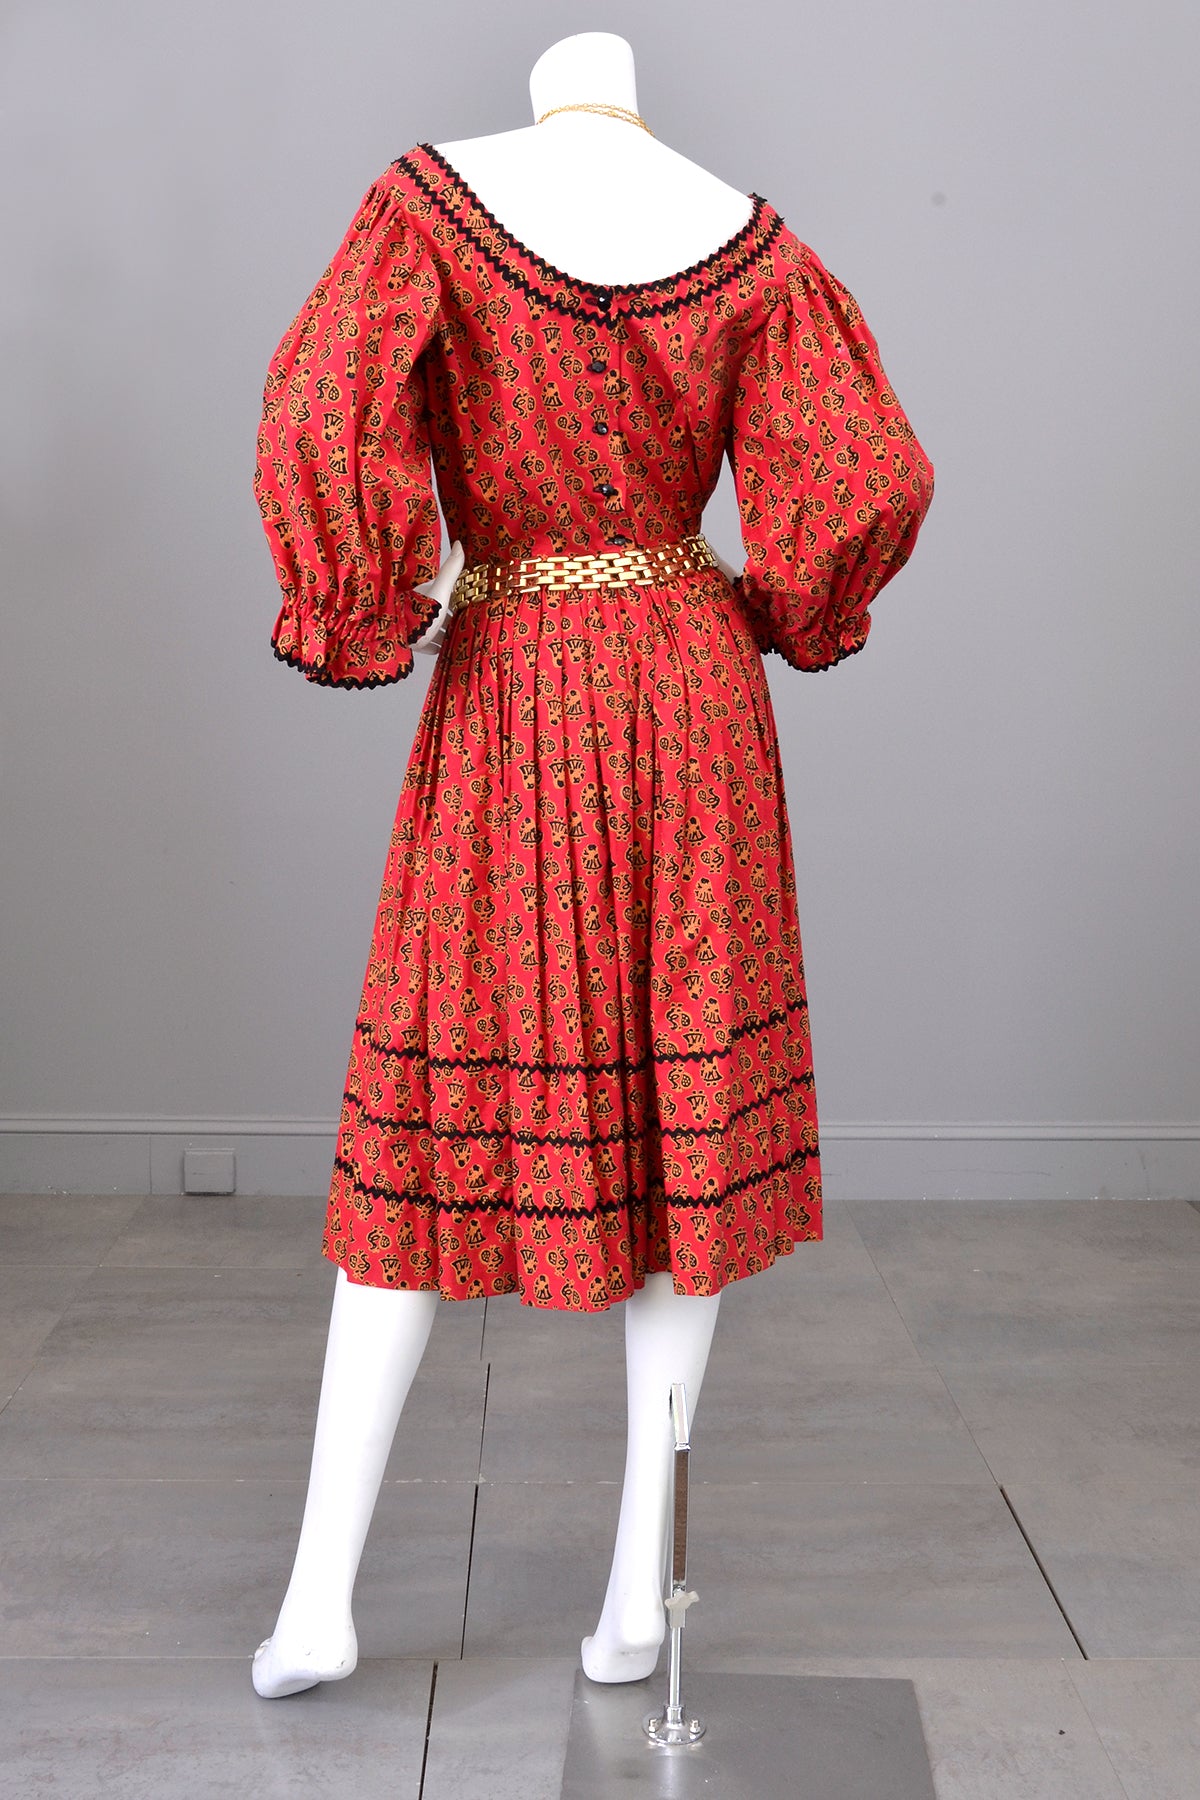 1950s Folklore Peasant Dress with Huge Poet Sleeves and Figural Novelty Print | Vintage Festival Folk Dress